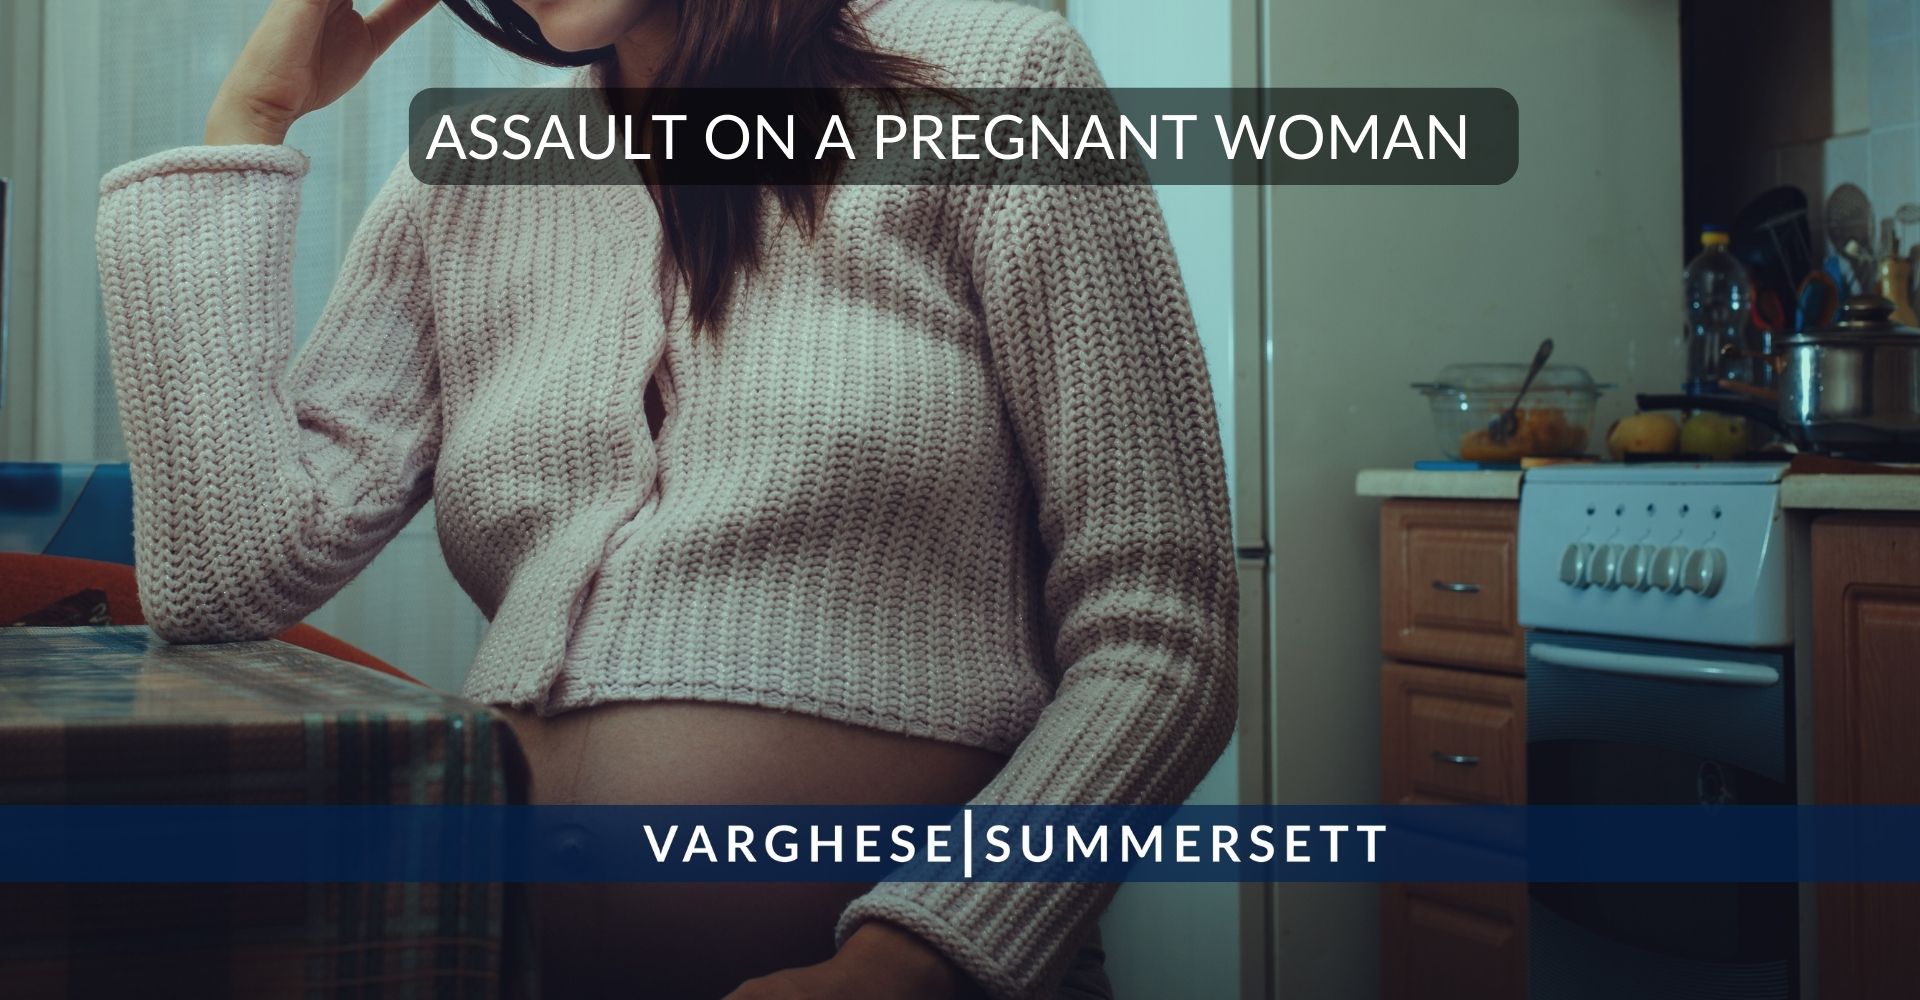 Agresión a una mujer embarazada en Texas | Agresión a una persona embarazada